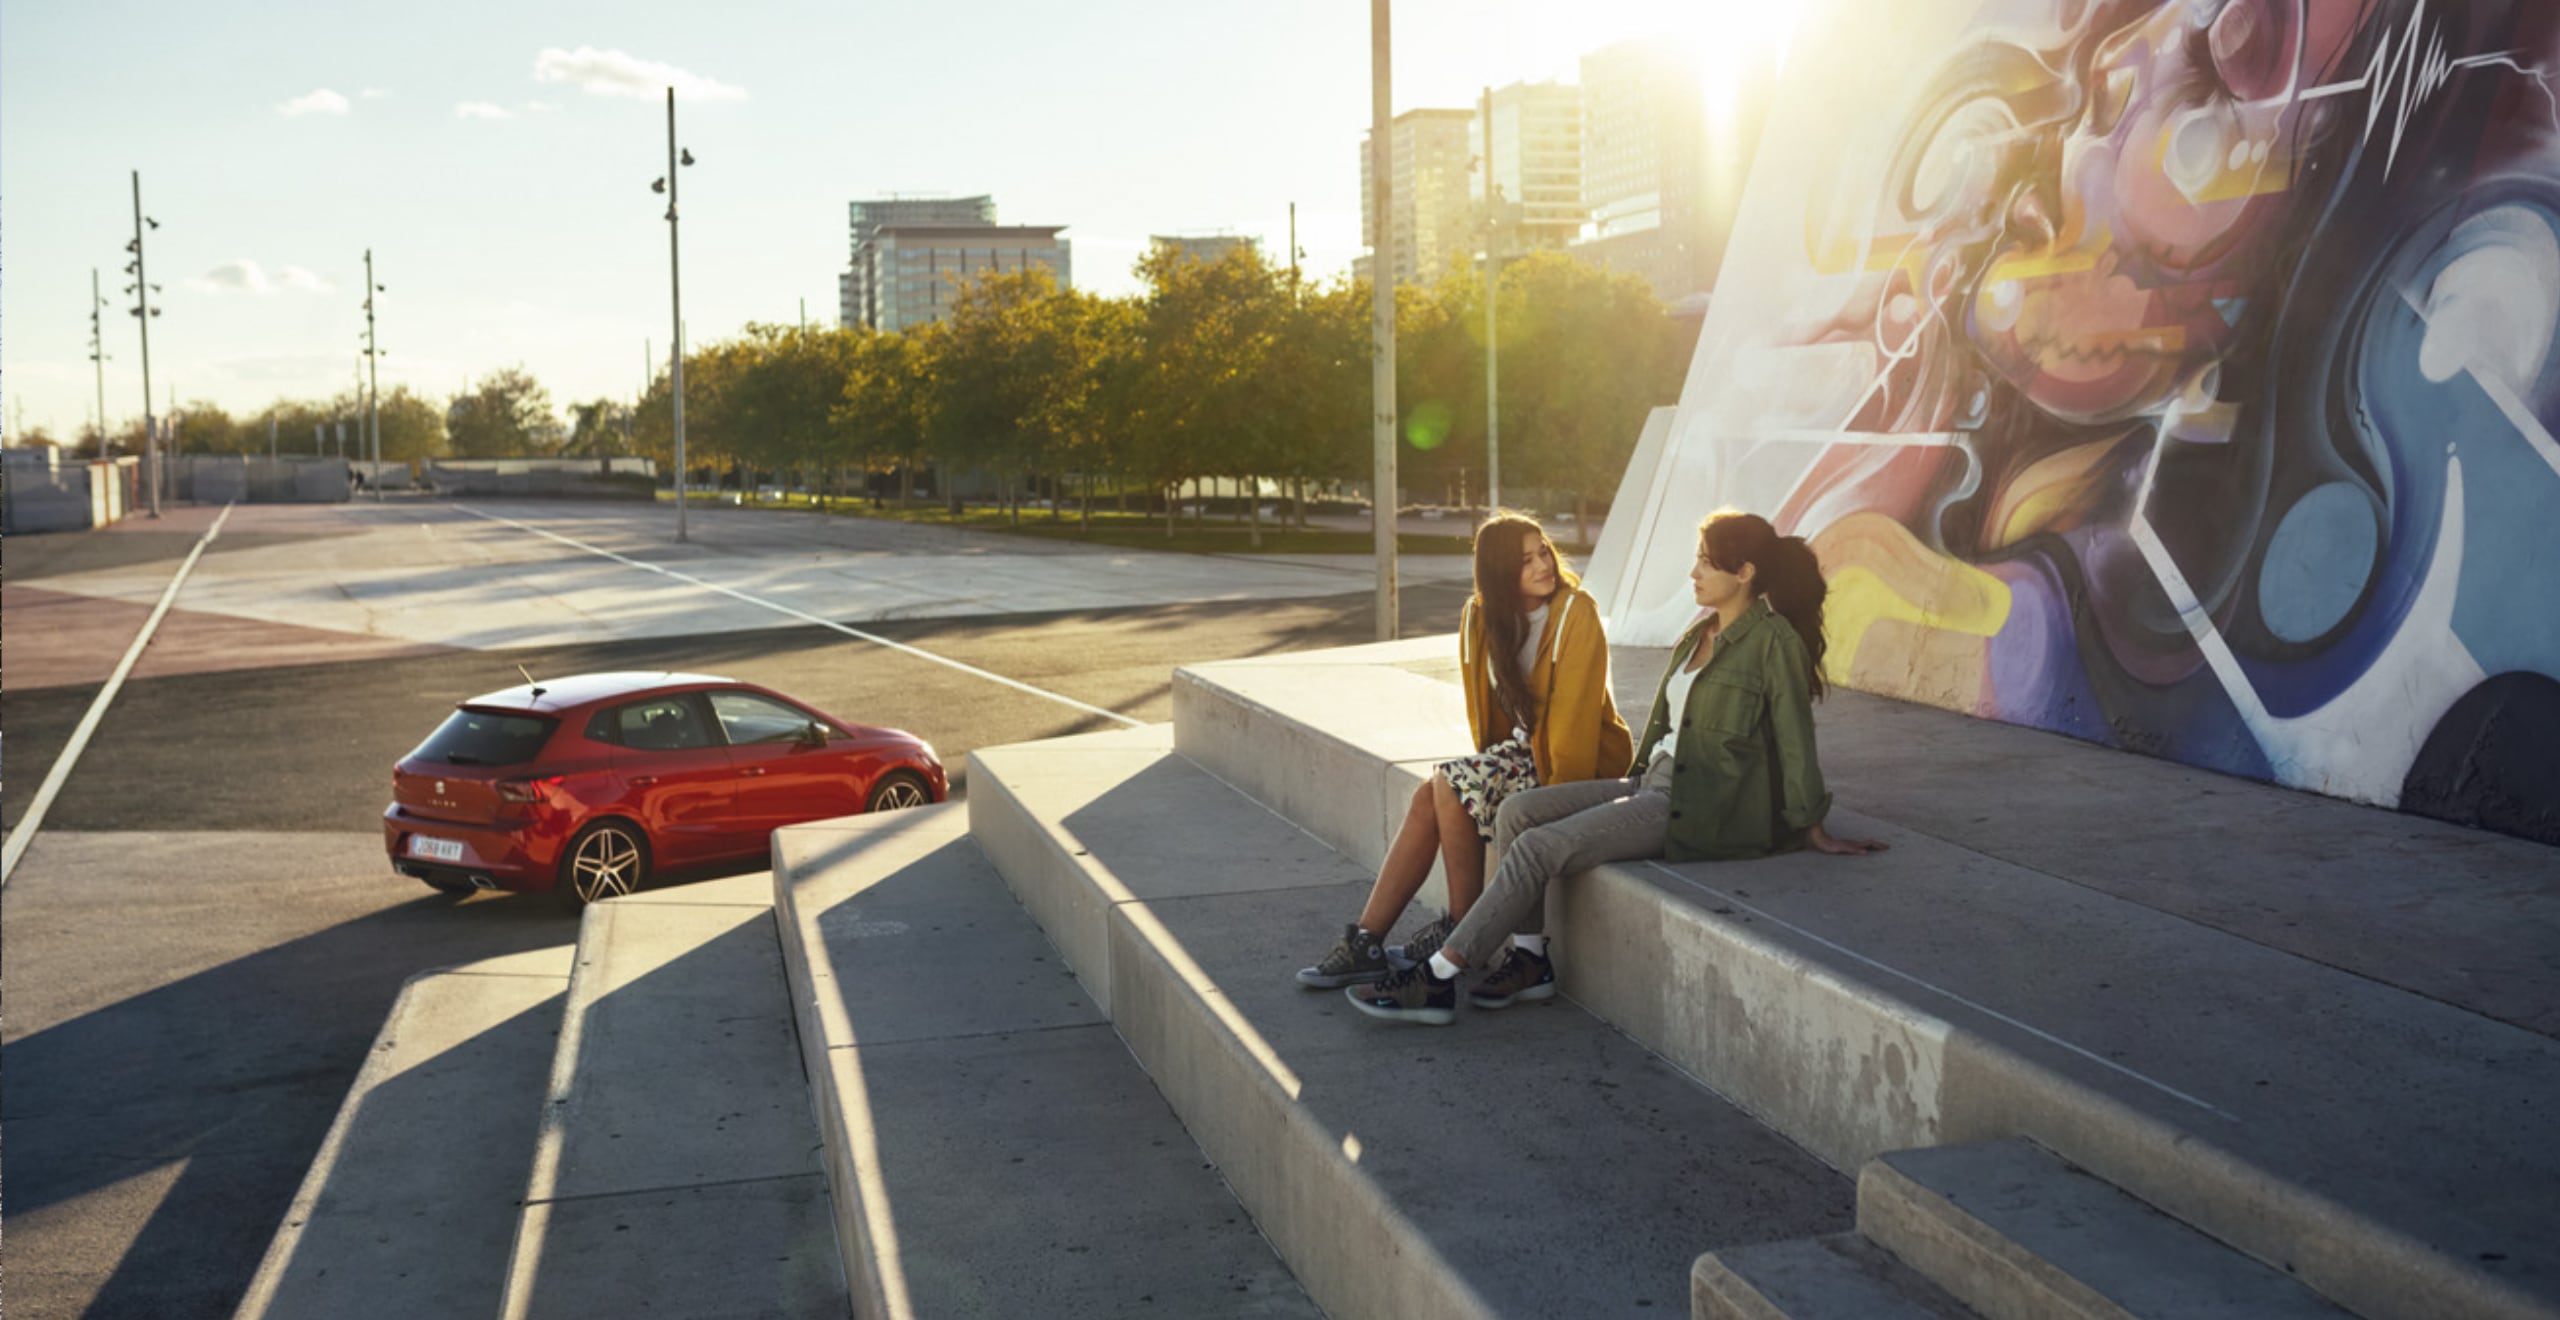 SEAT Ibiza con chicas sentadas conversando 